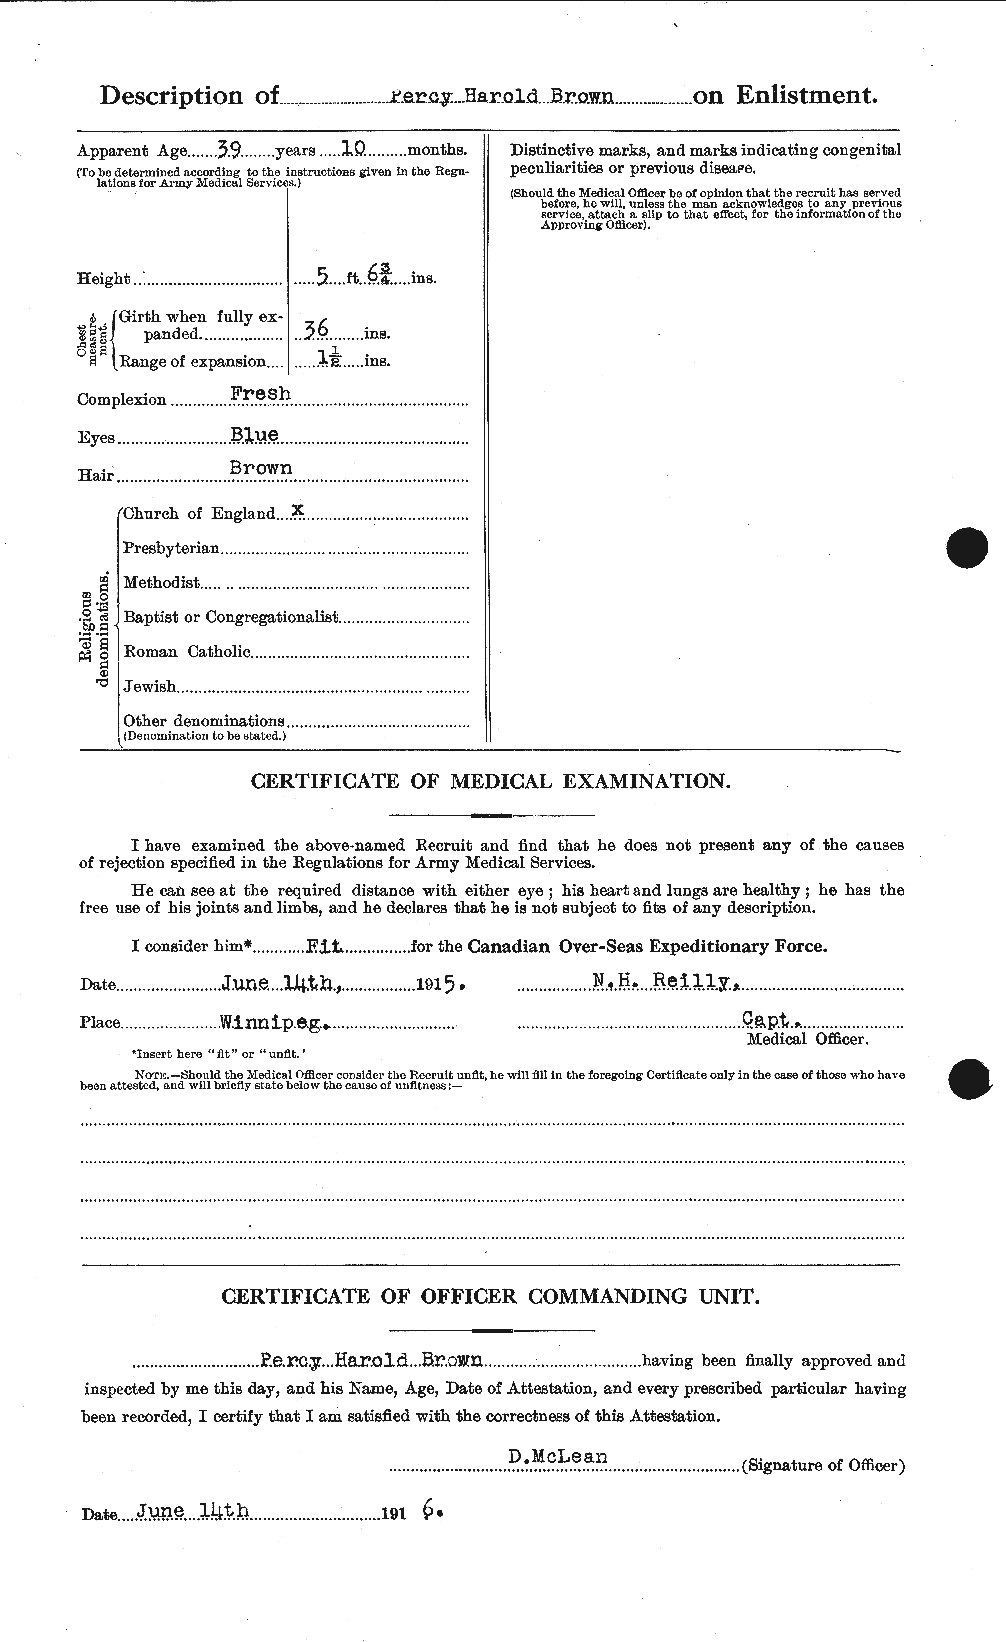 Dossiers du Personnel de la Première Guerre mondiale - CEC 267170b